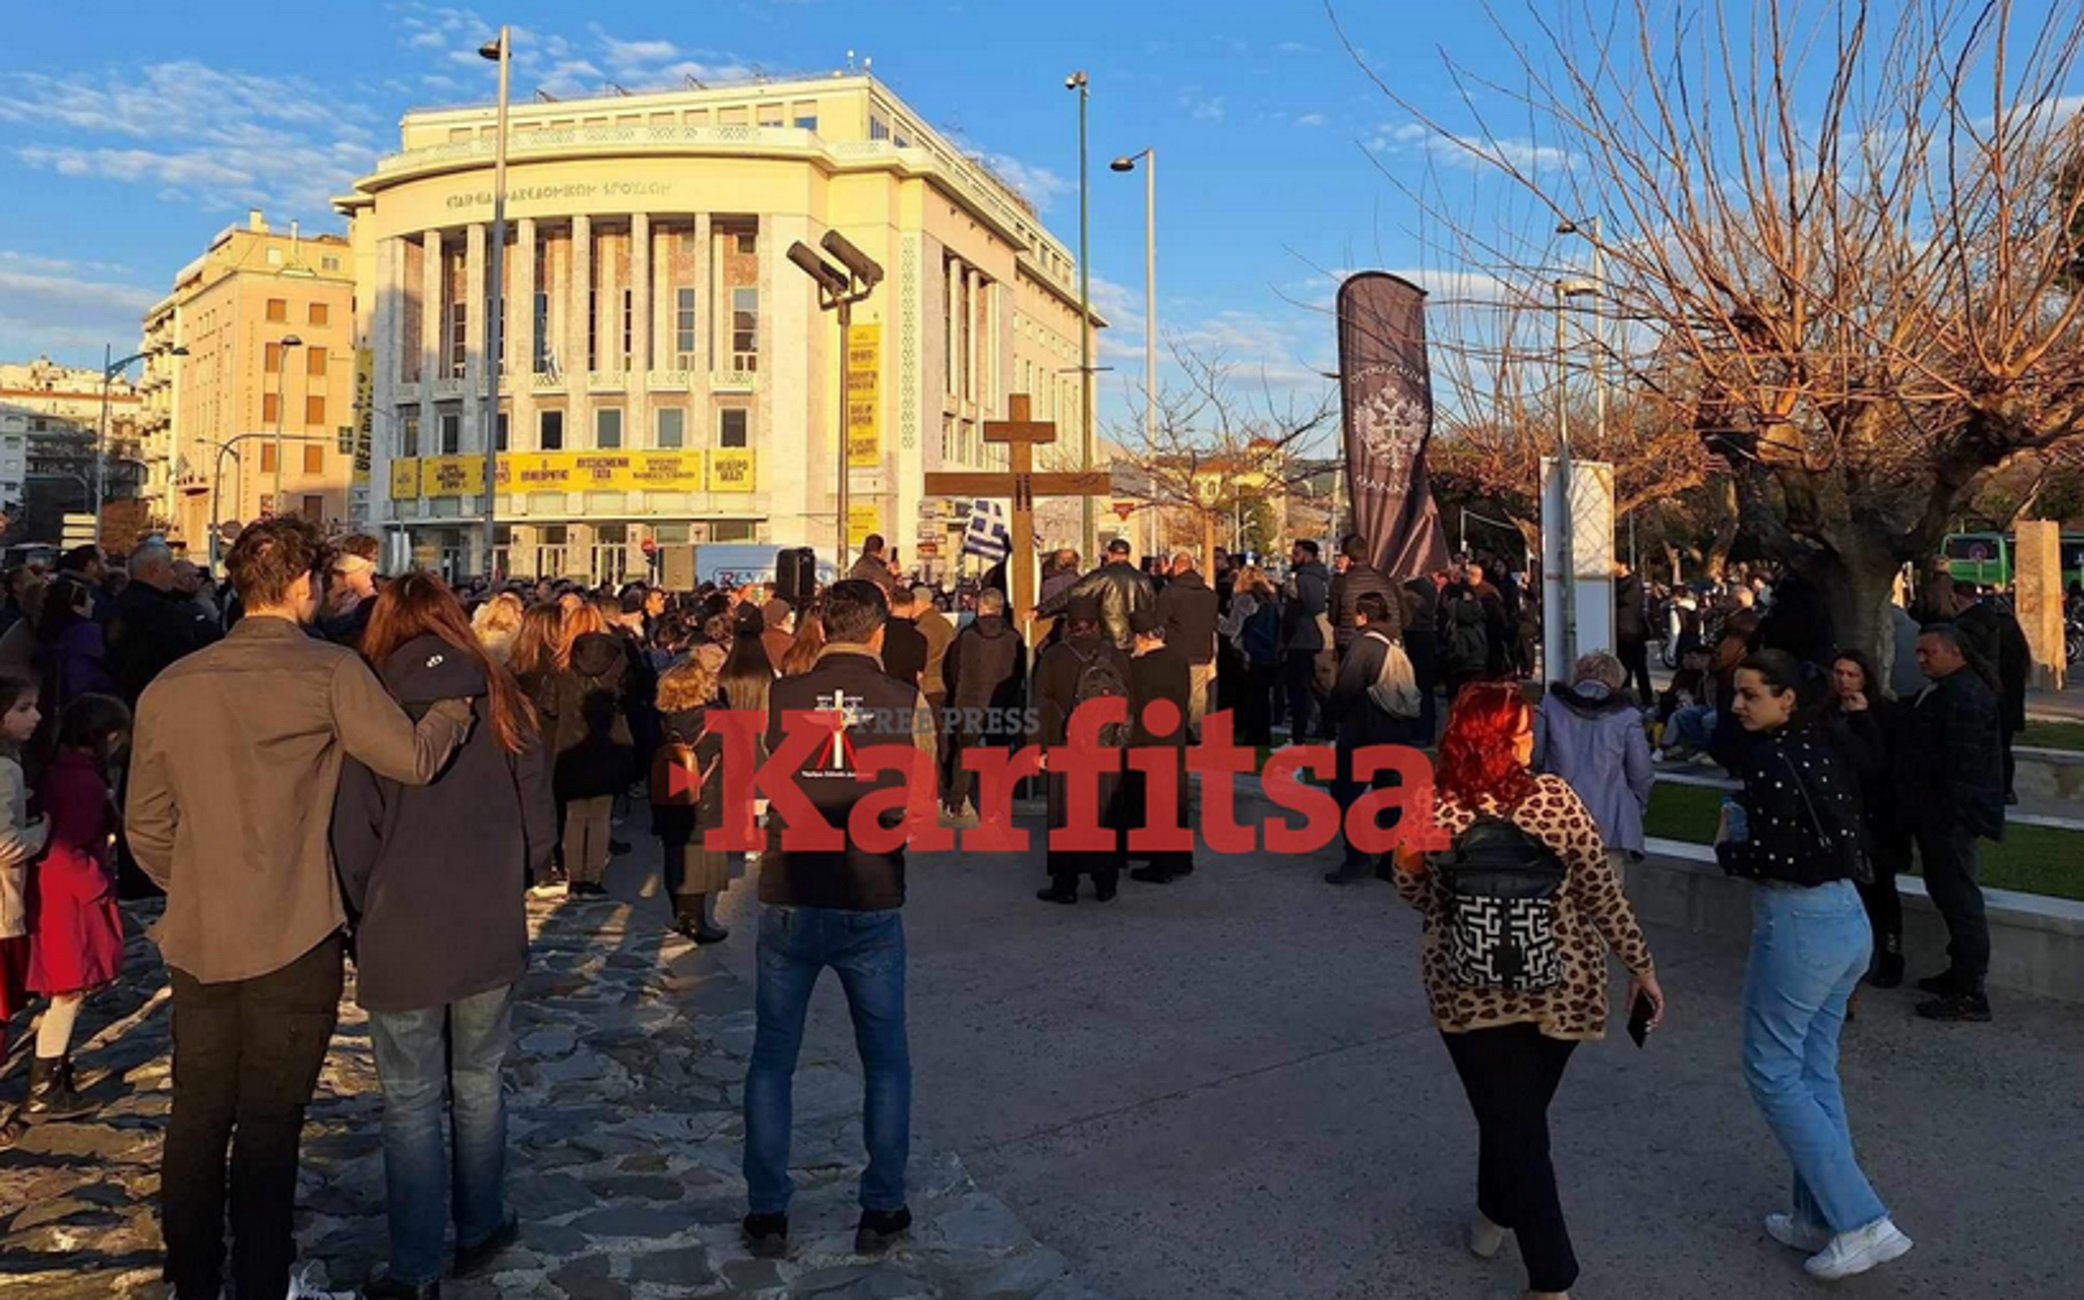 Θεσσαλονίκη: Εικόνες από τη διαμαρτυρία ενάντια στο νομοσχέδιο για τους γάμους των ομόφυλων ζευγαριών